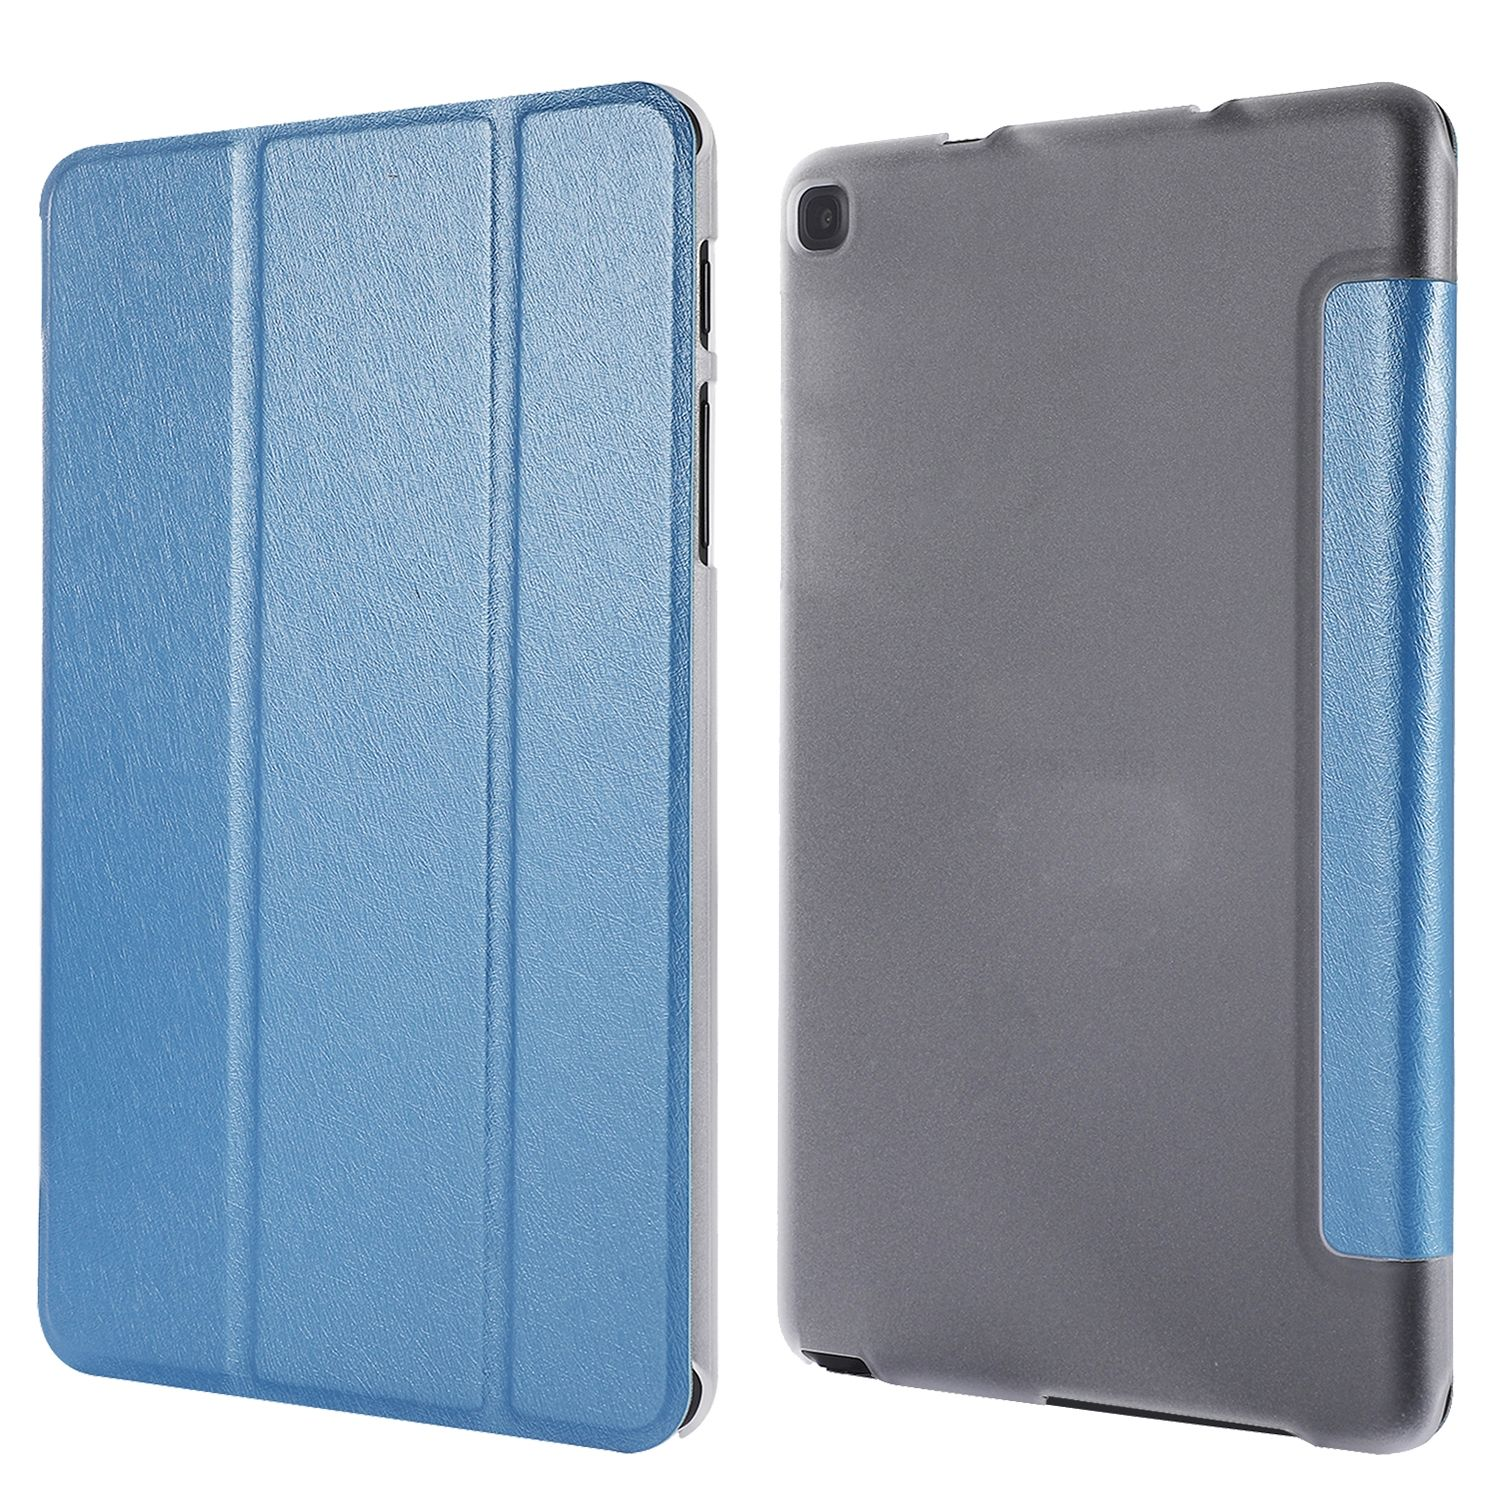 Tablet-Hülle DESIGN Samsung KÖNIG Blau Bookcover Kunstleder, Tablet-Hülle für